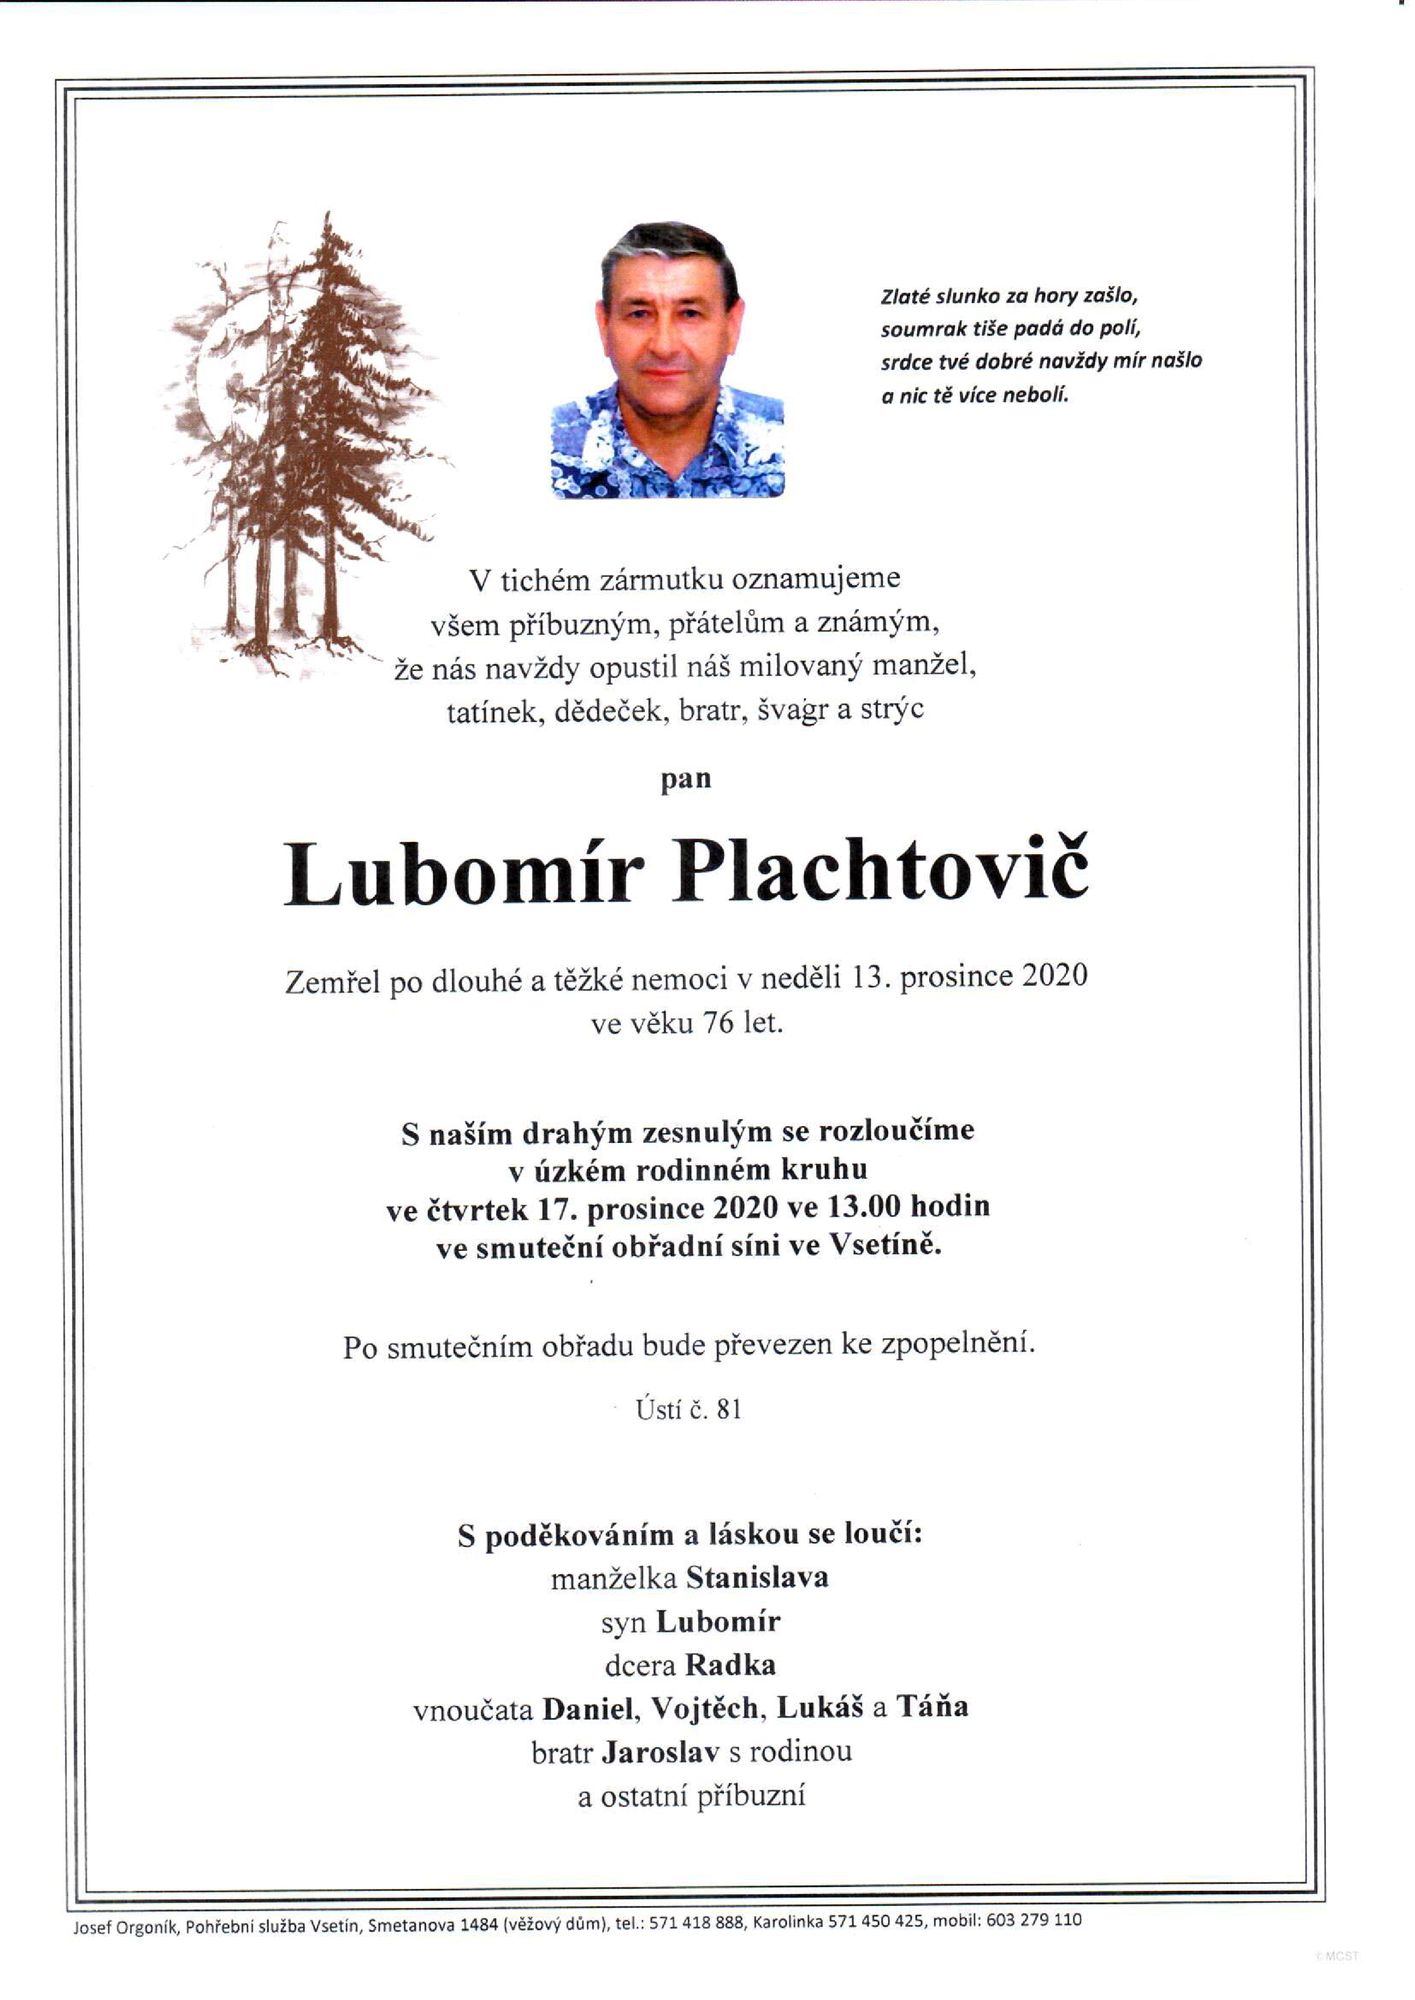 Lubomír Plachtovič